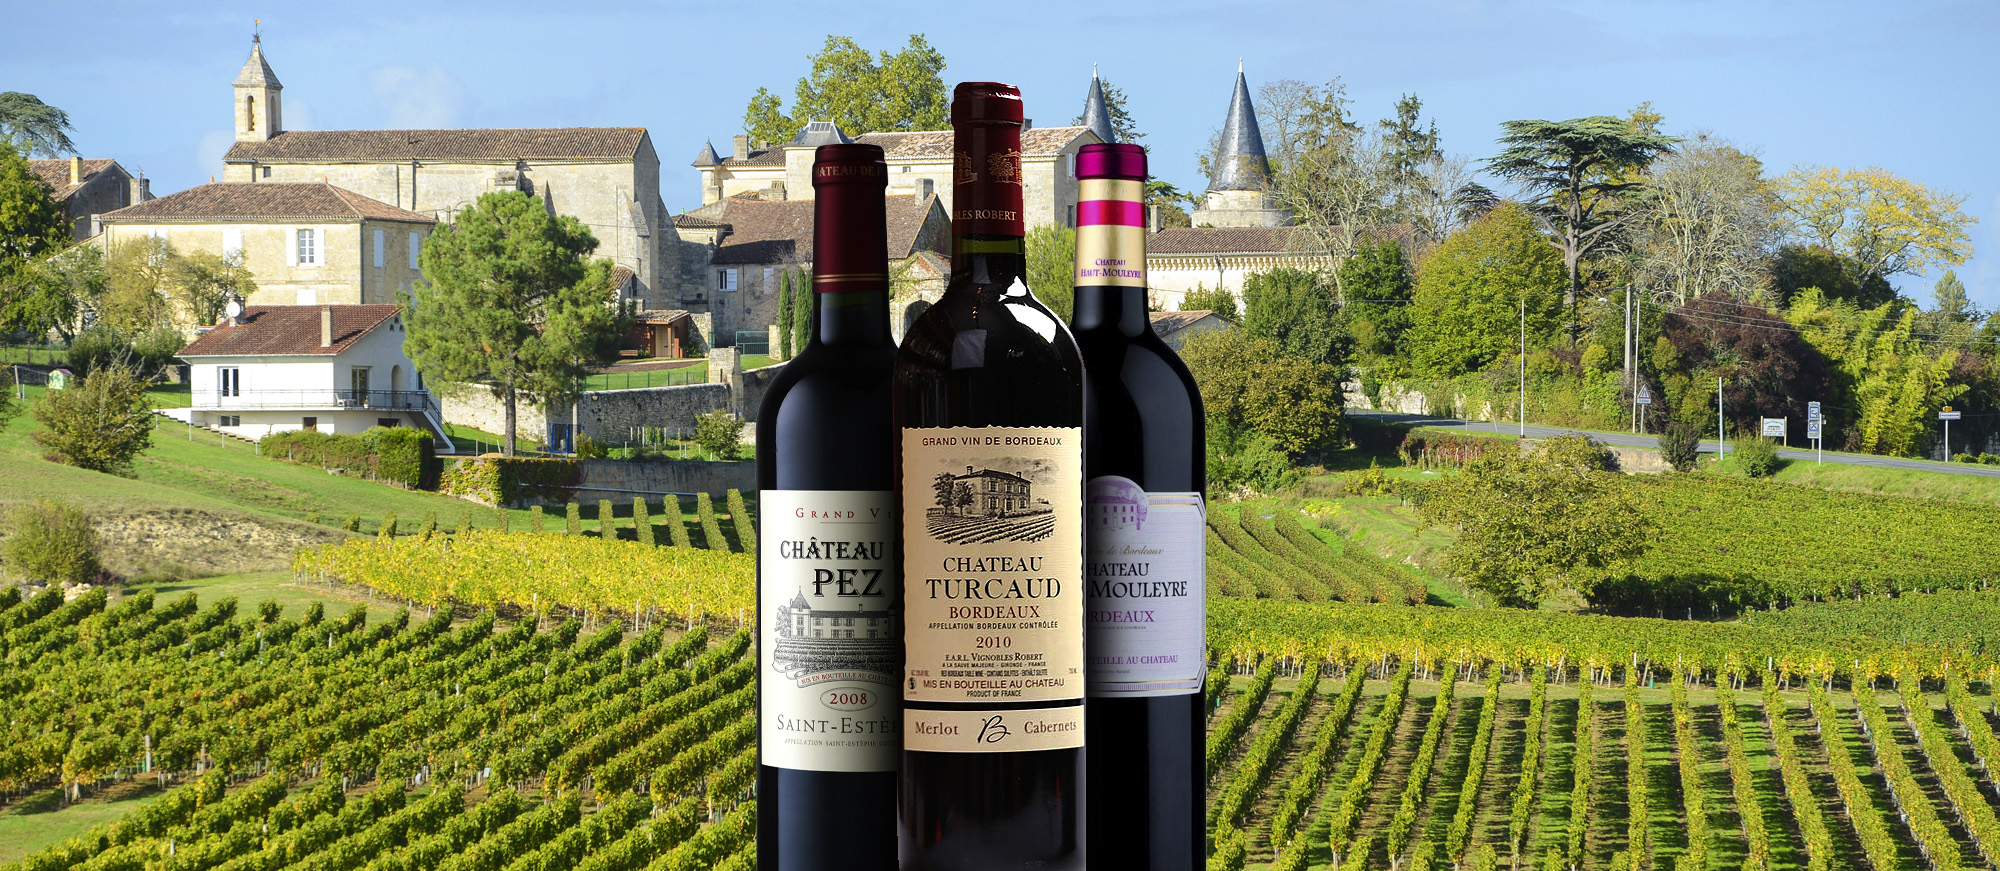 Chateau le crock. Франция бордо Шато винодельня. Bordeaux Франция вино. Франция бордо виноградники Шато. Шато Пино винодельня.